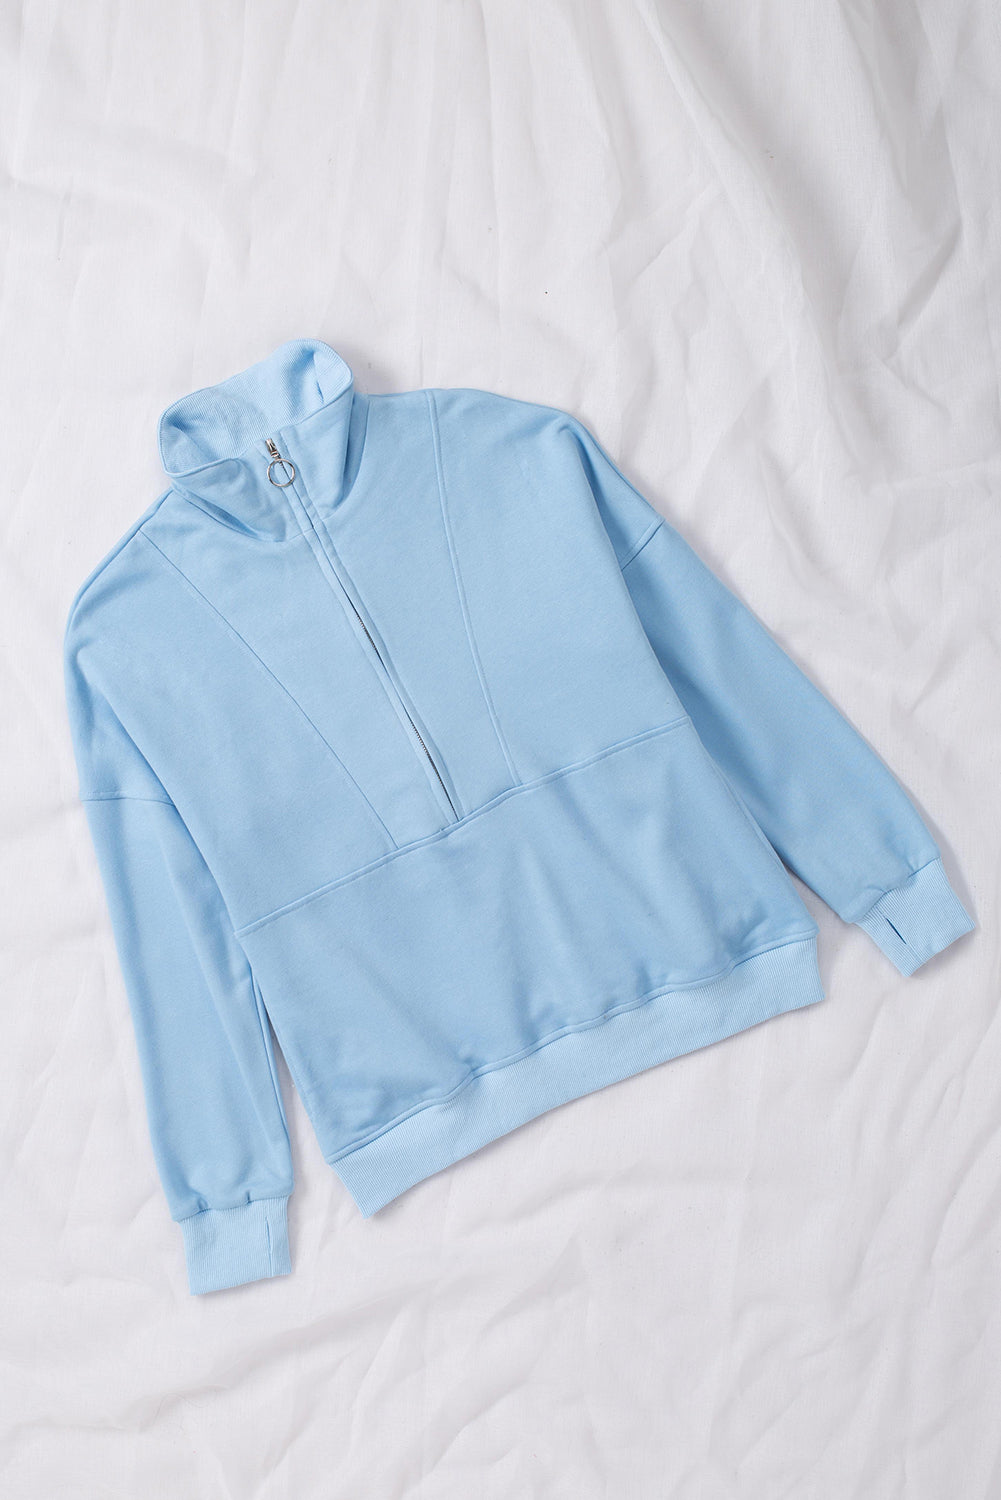 Gray Solid Color Zip Collar Sweatshirt with Pockets